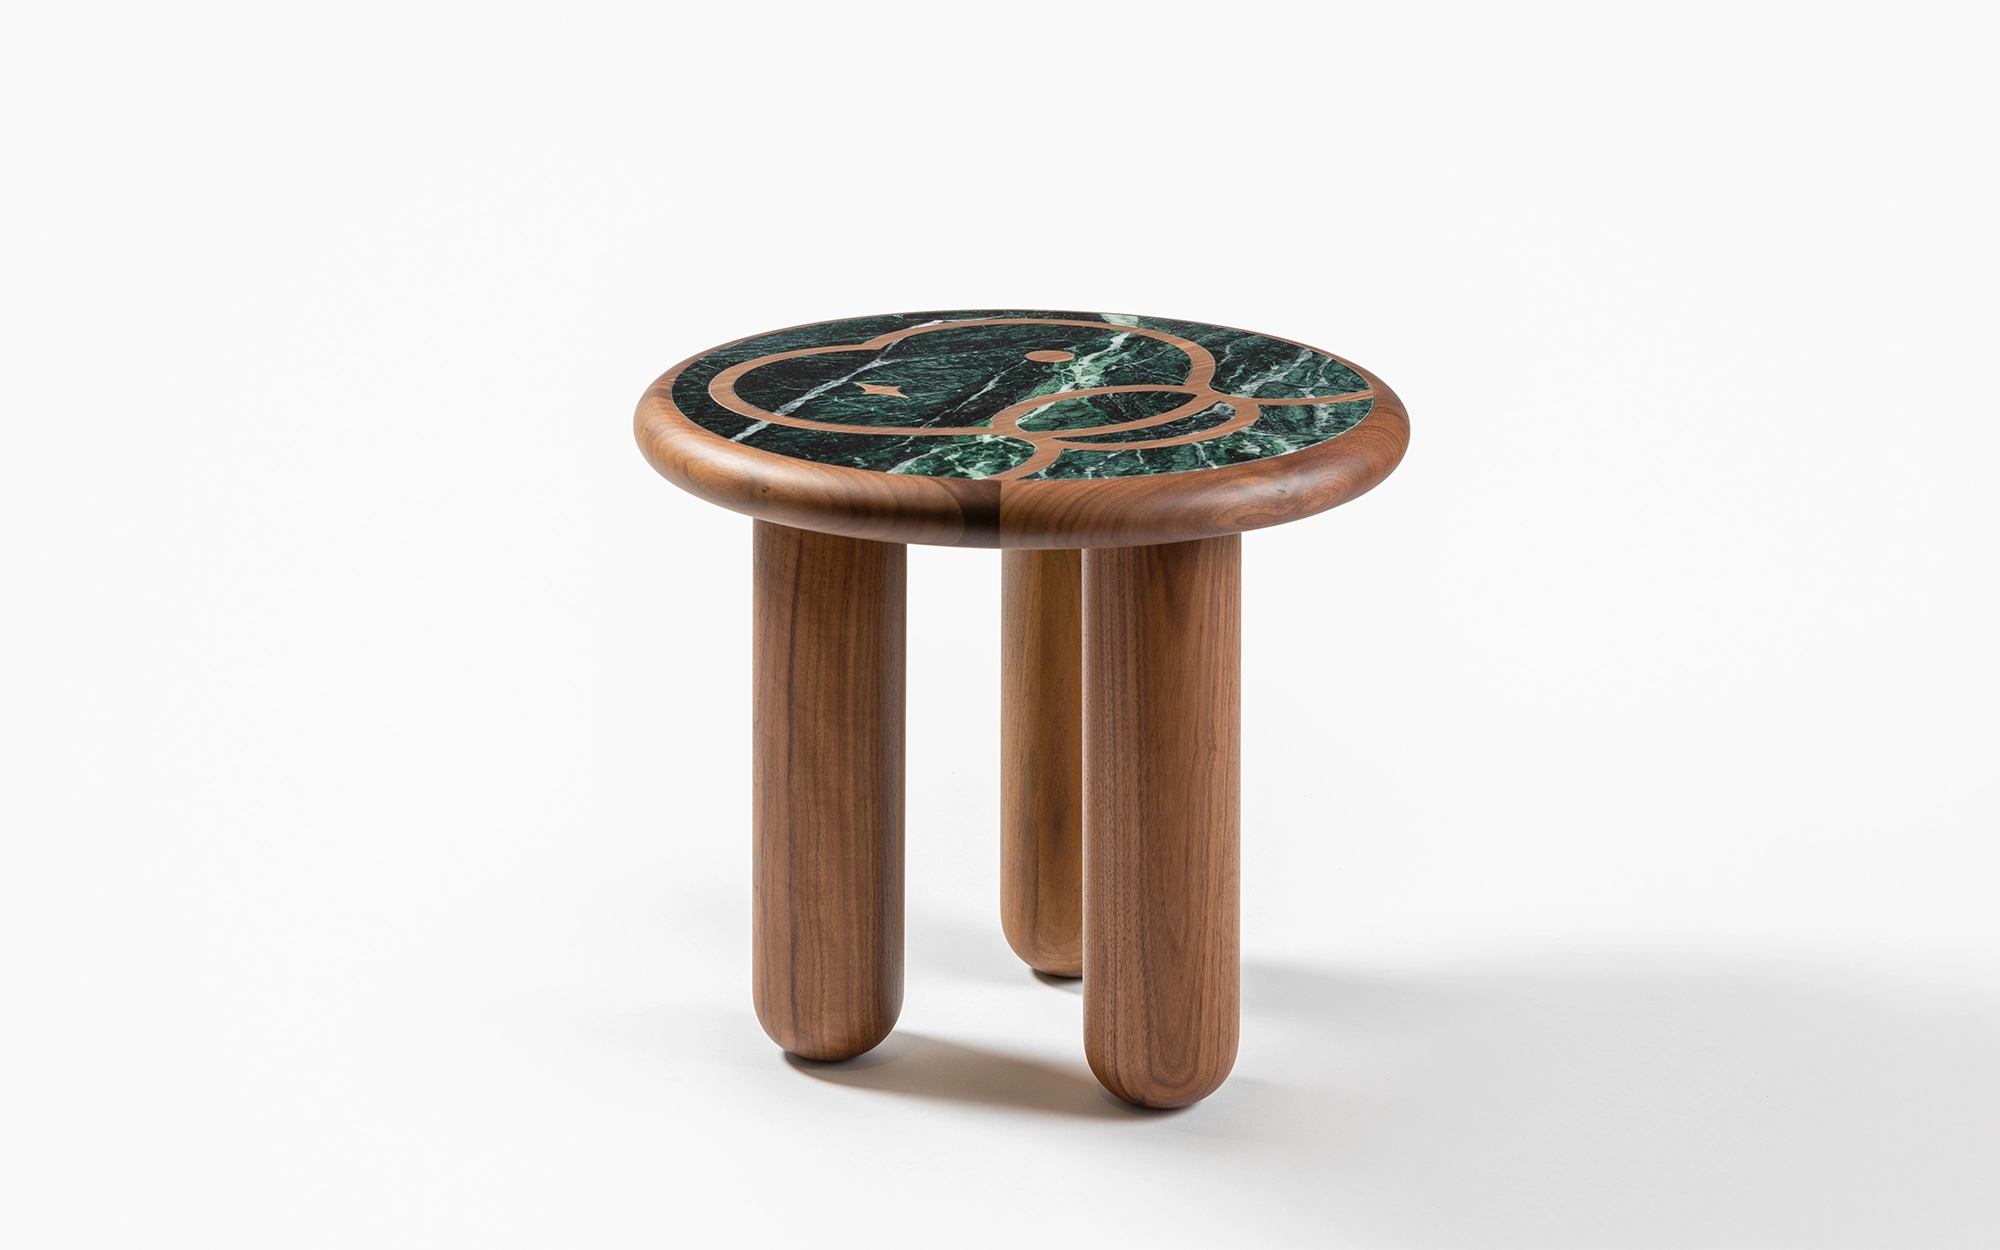 Monkey side table  - Jaime Hayon - Coffee table - Galerie kreo